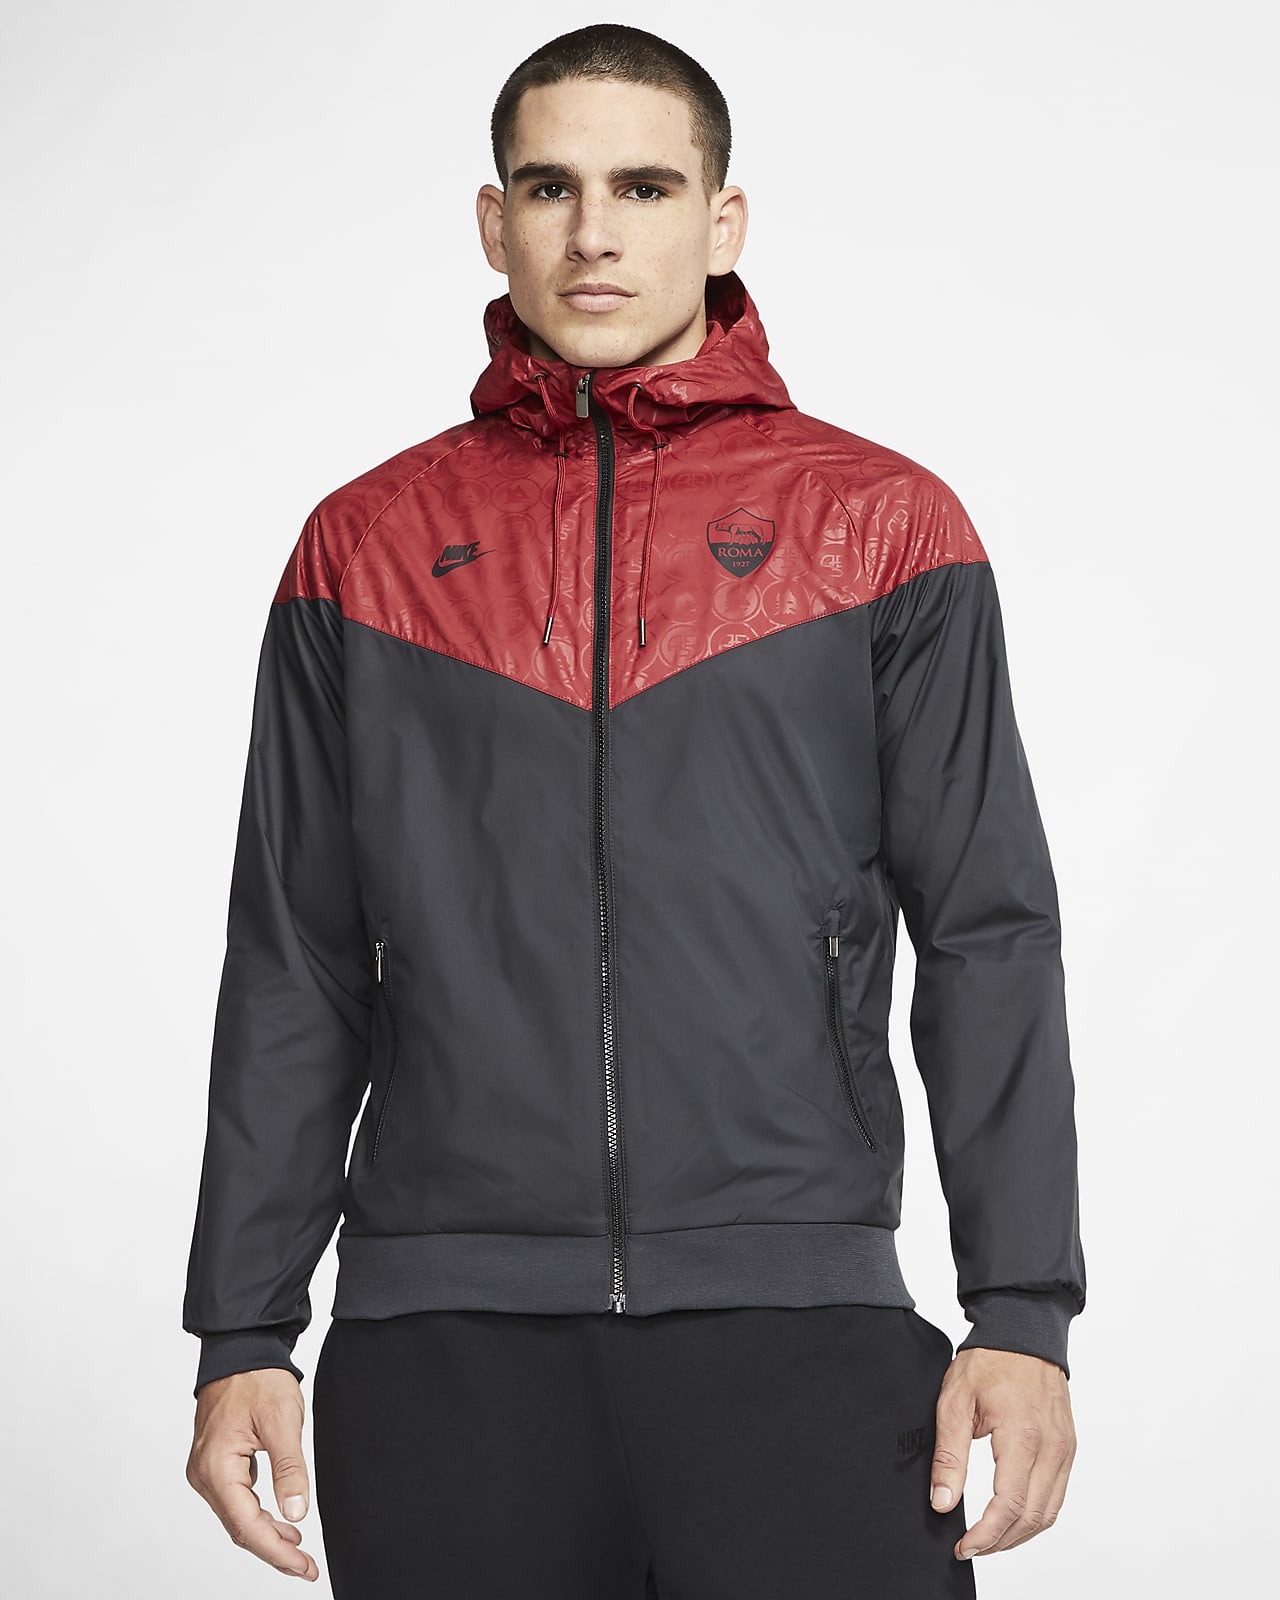 A.S. Roma Windrunner Men's Jacket. Nike LU